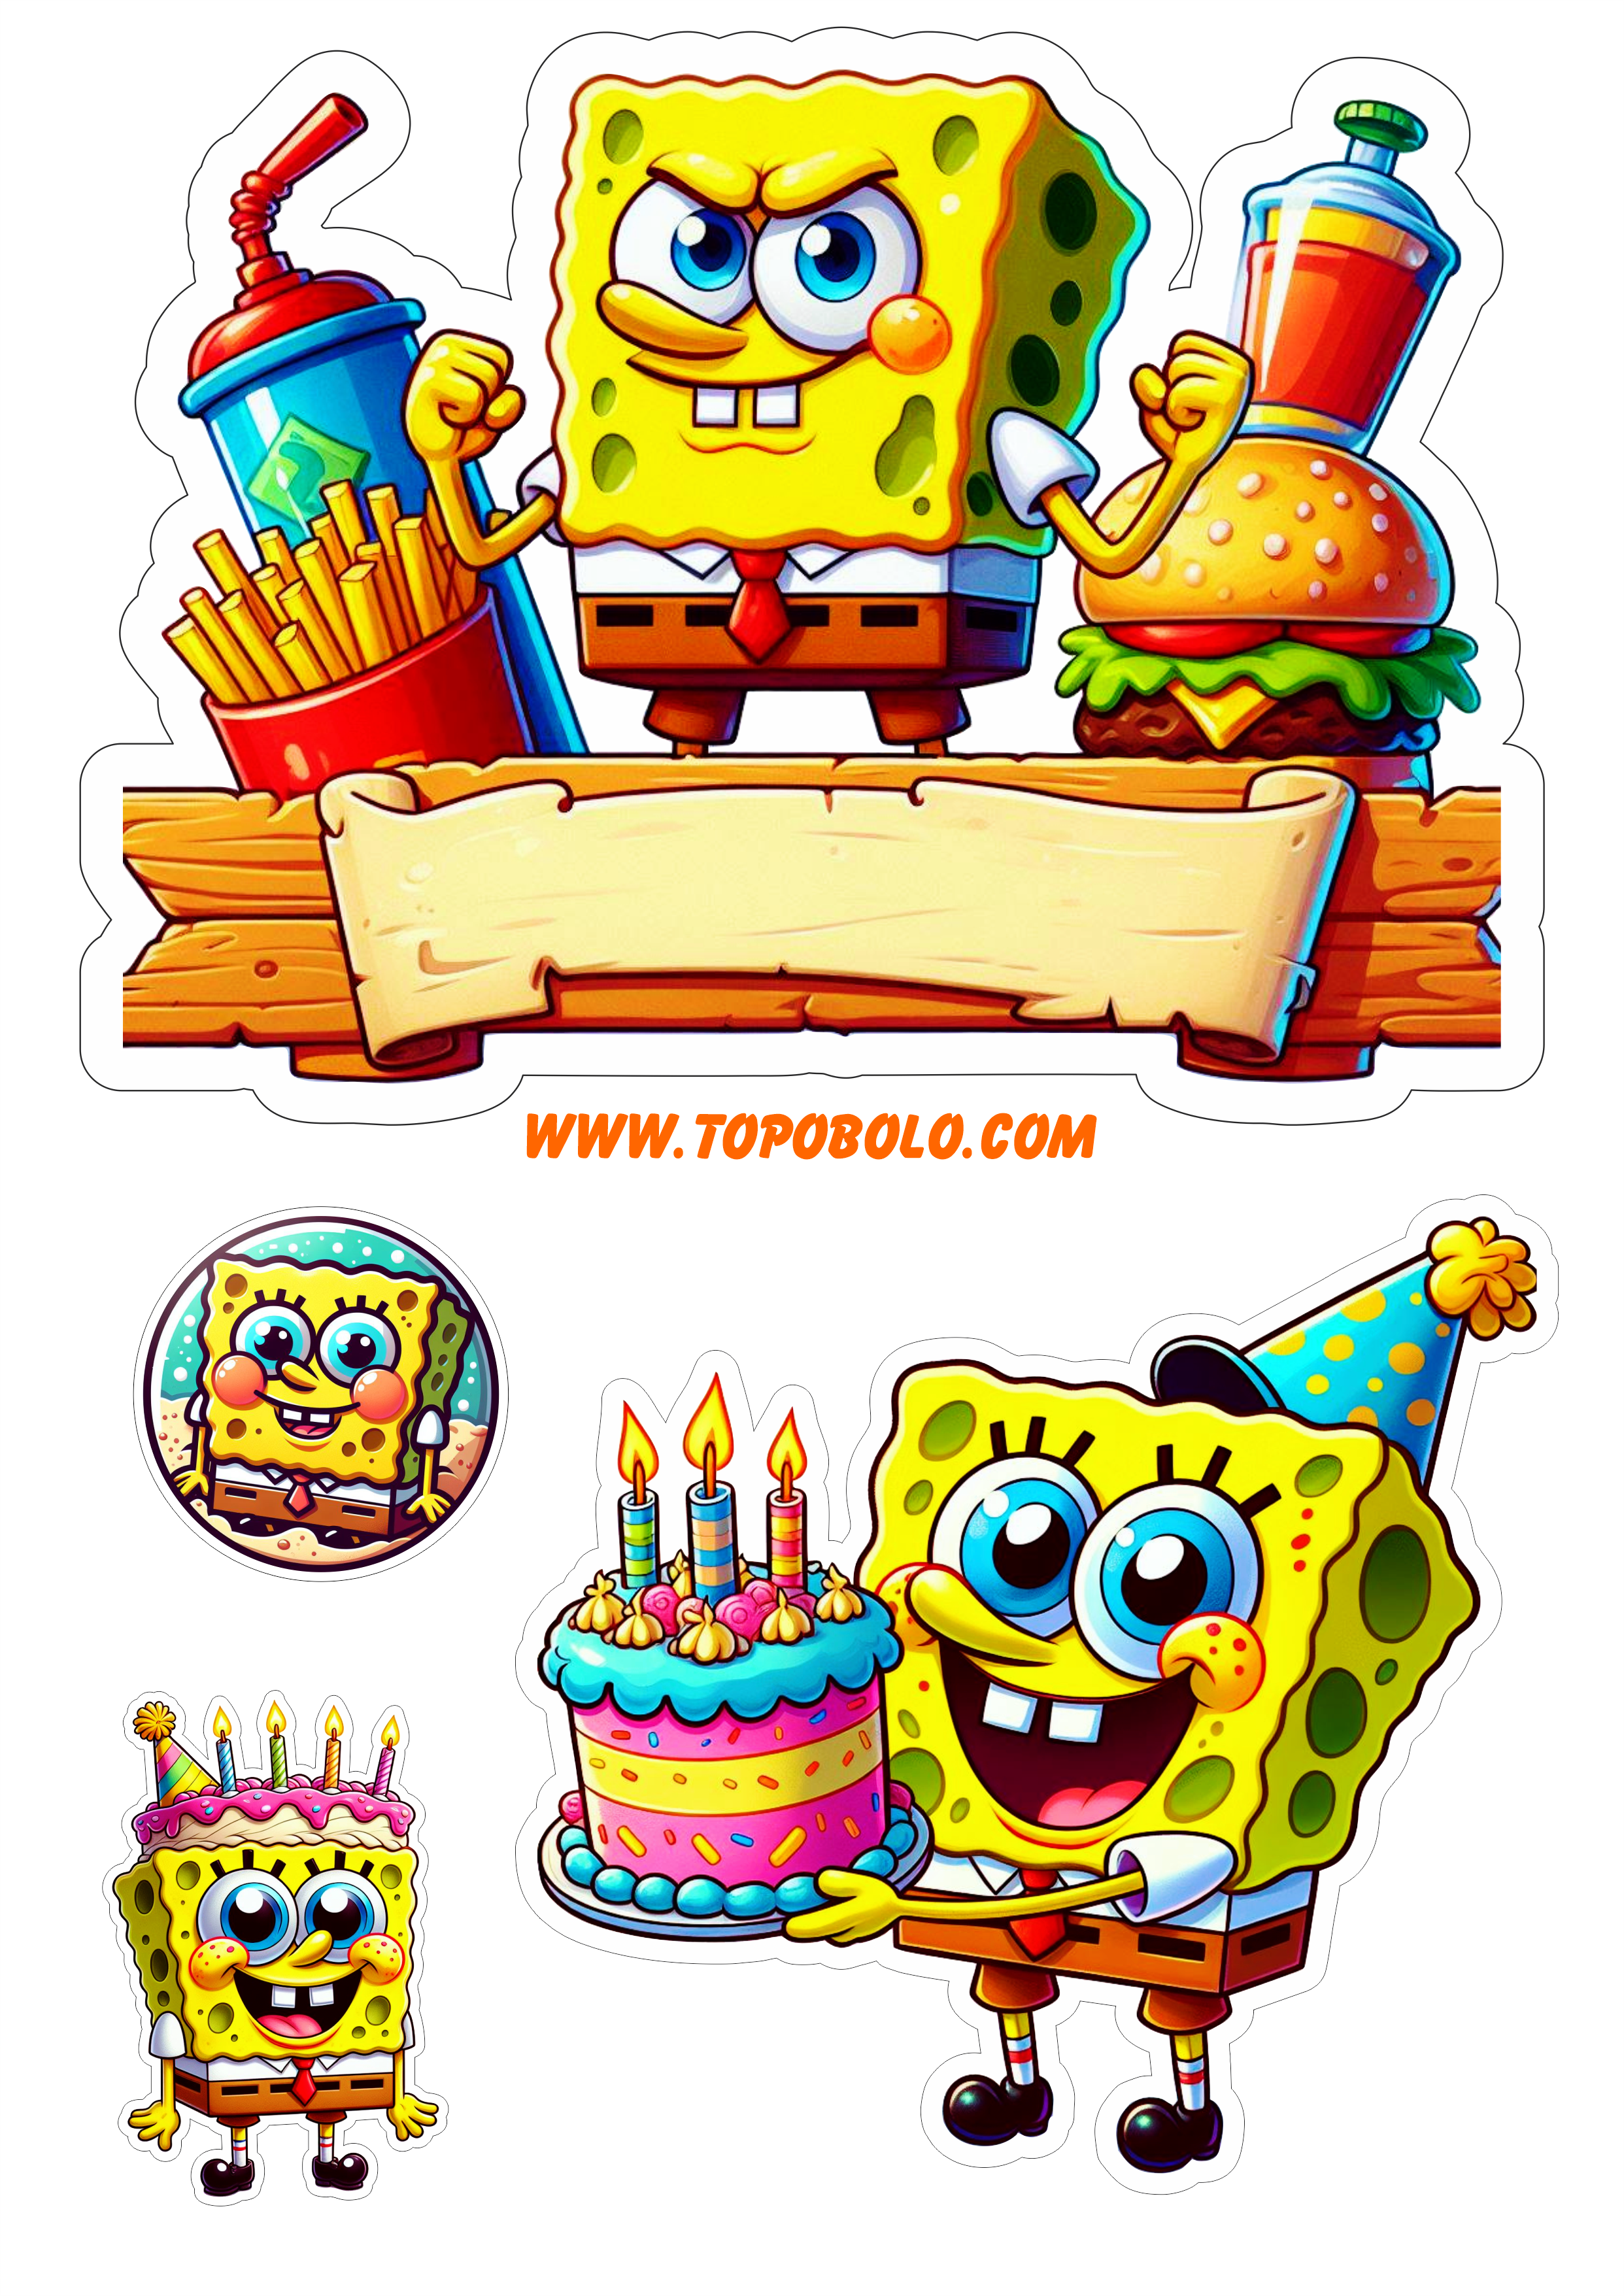 Topo de bolo Bob Esponja festa infantil personalizada papelaria criativa pronto para imprimir e decorar png